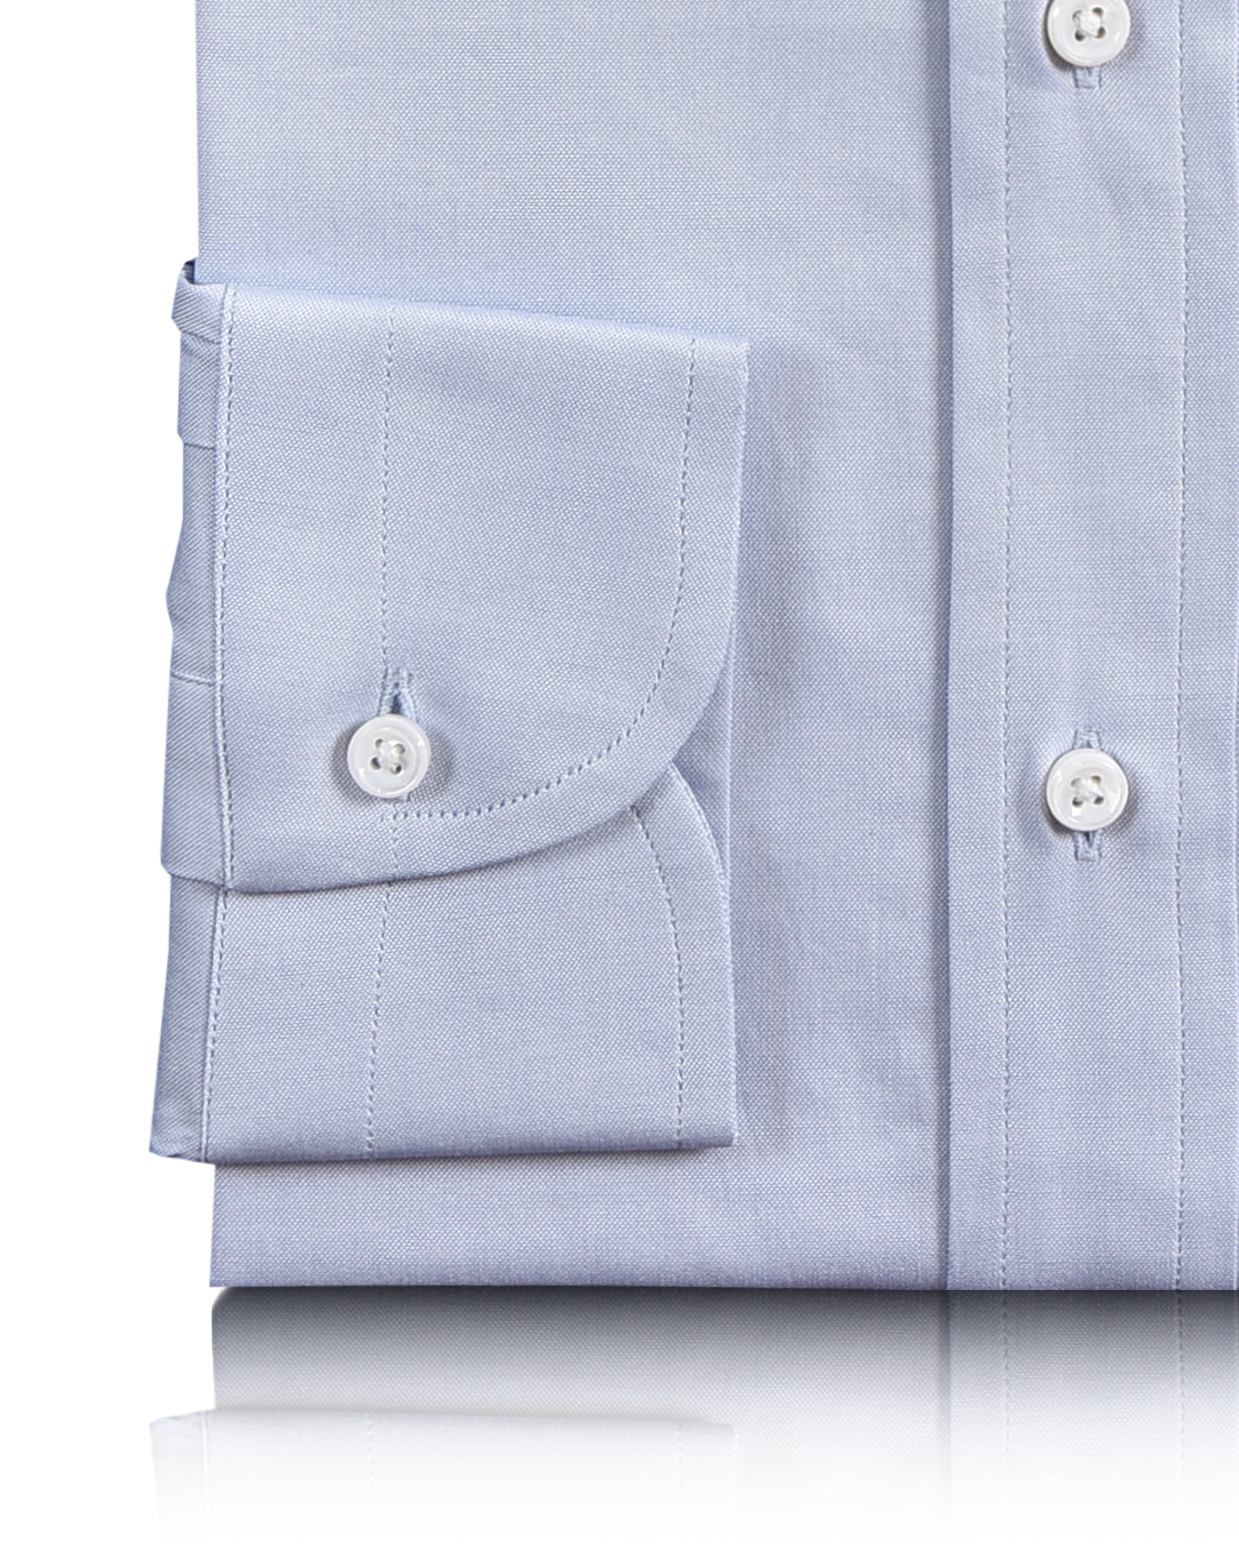 Luxire Presto: Mild Blue Oxford Classic Shirt